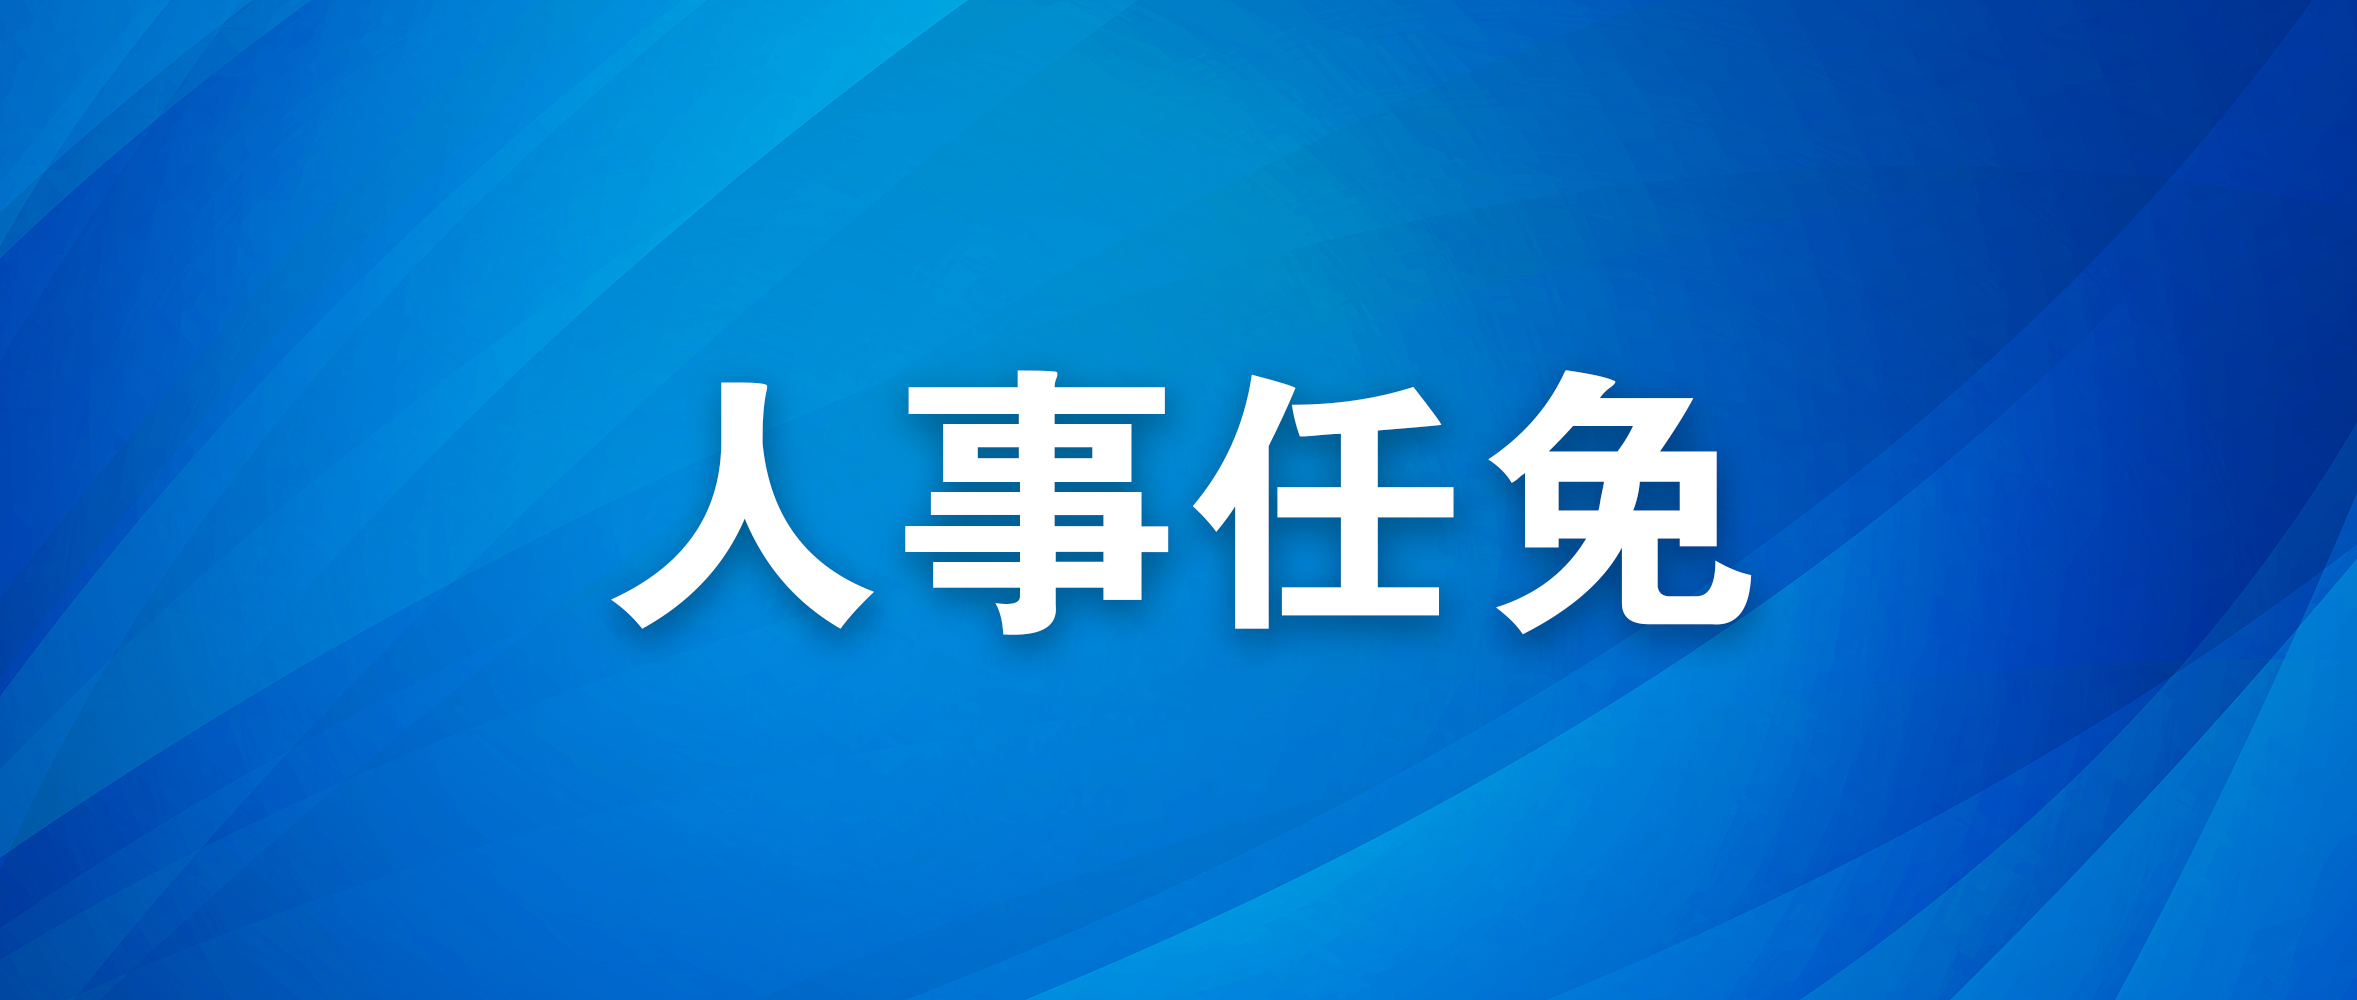 连云港市人民代表大会常务委员会关于接受刘红辞去连云港市人大常委会委员职务的决定